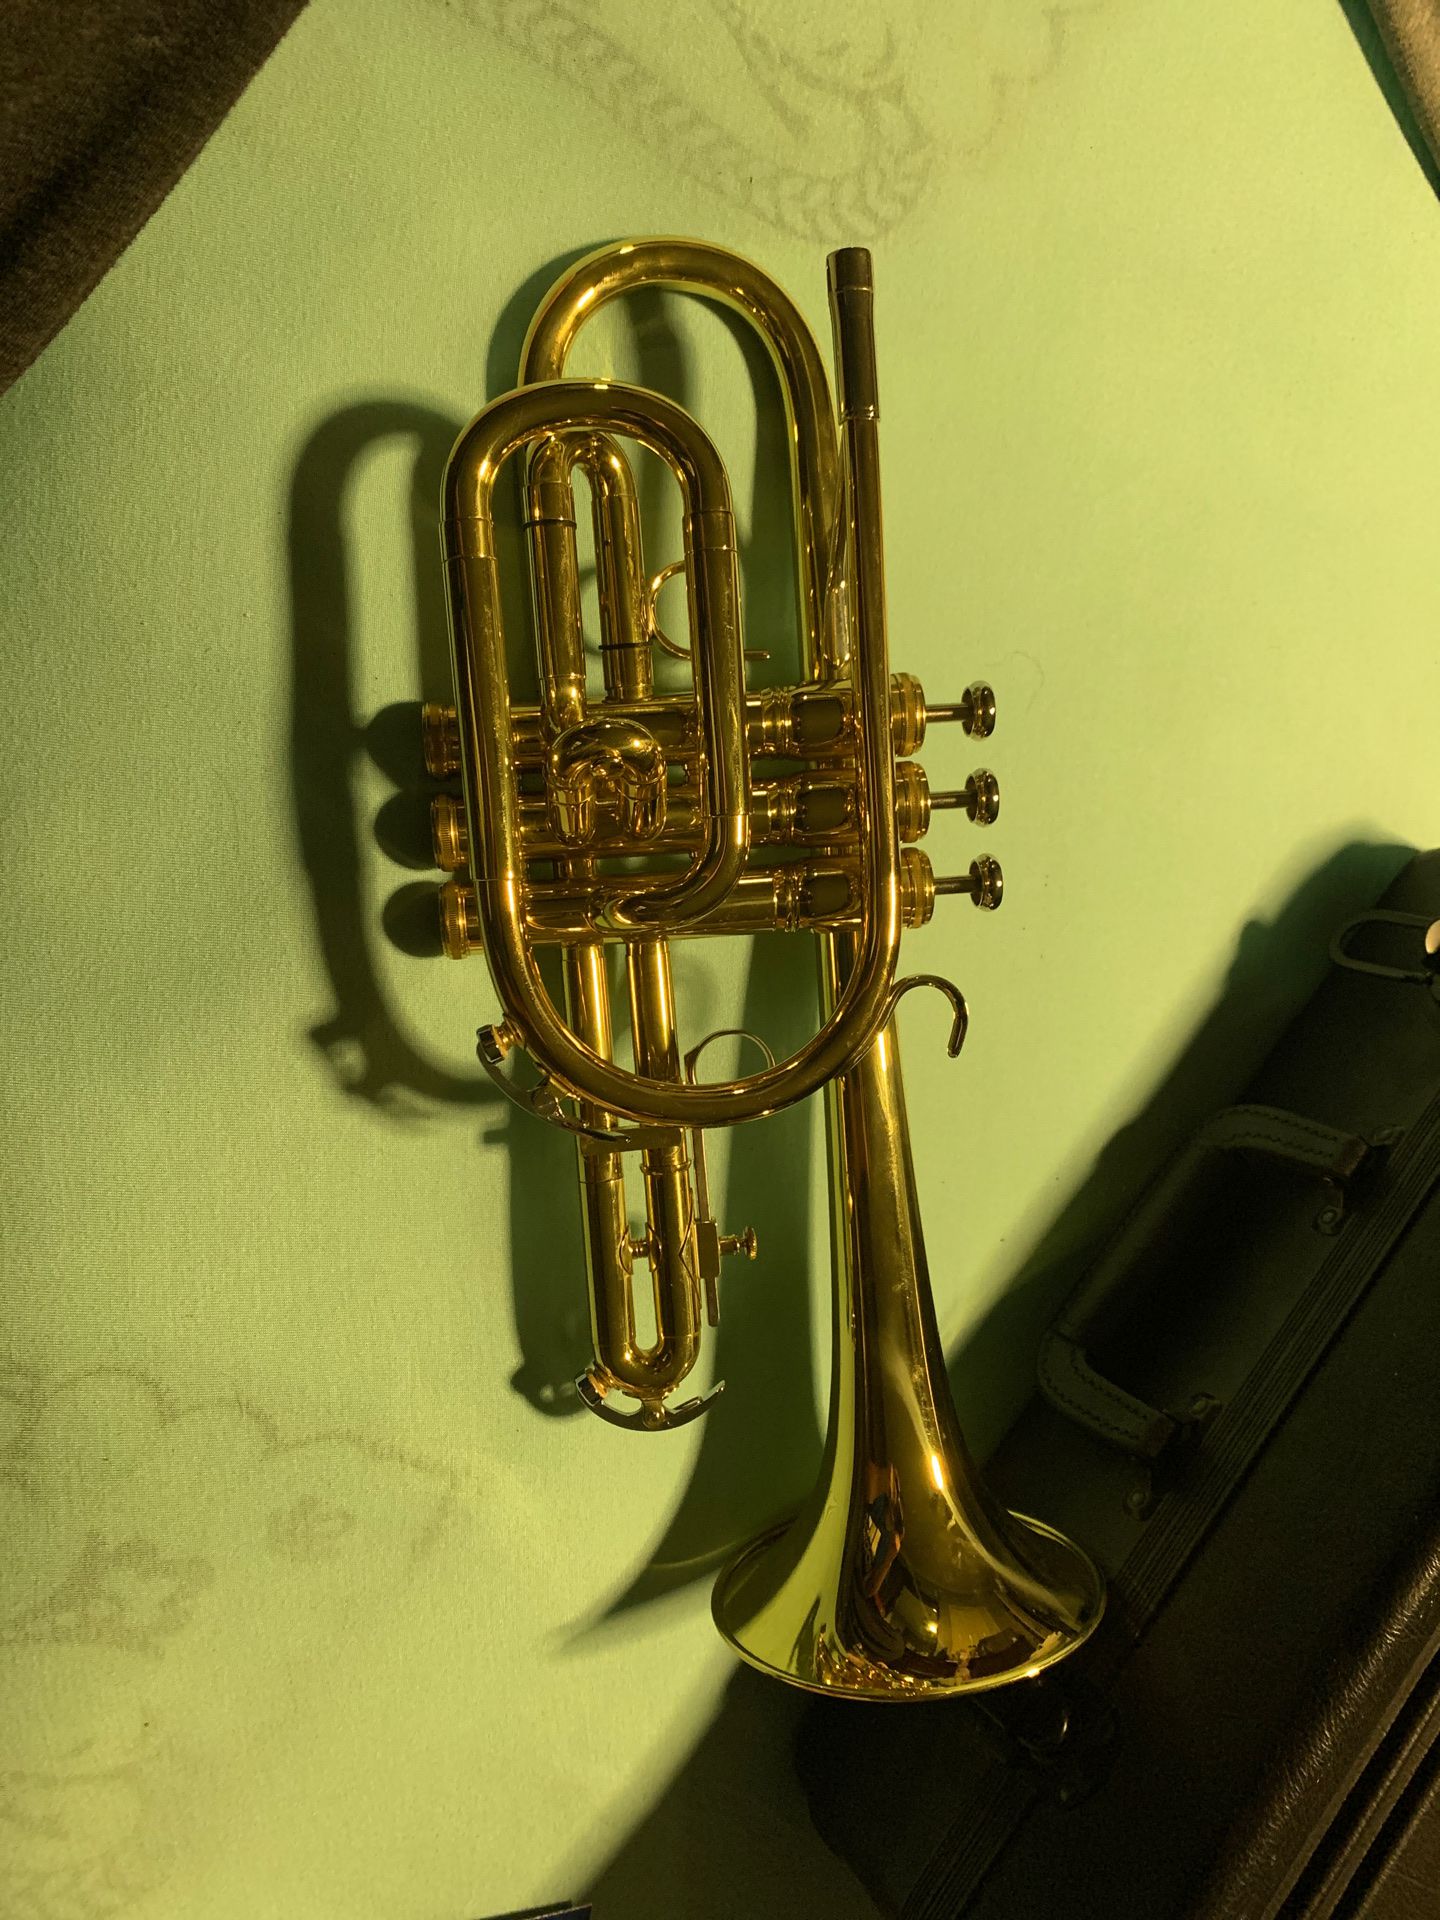 King 603 student model cornet